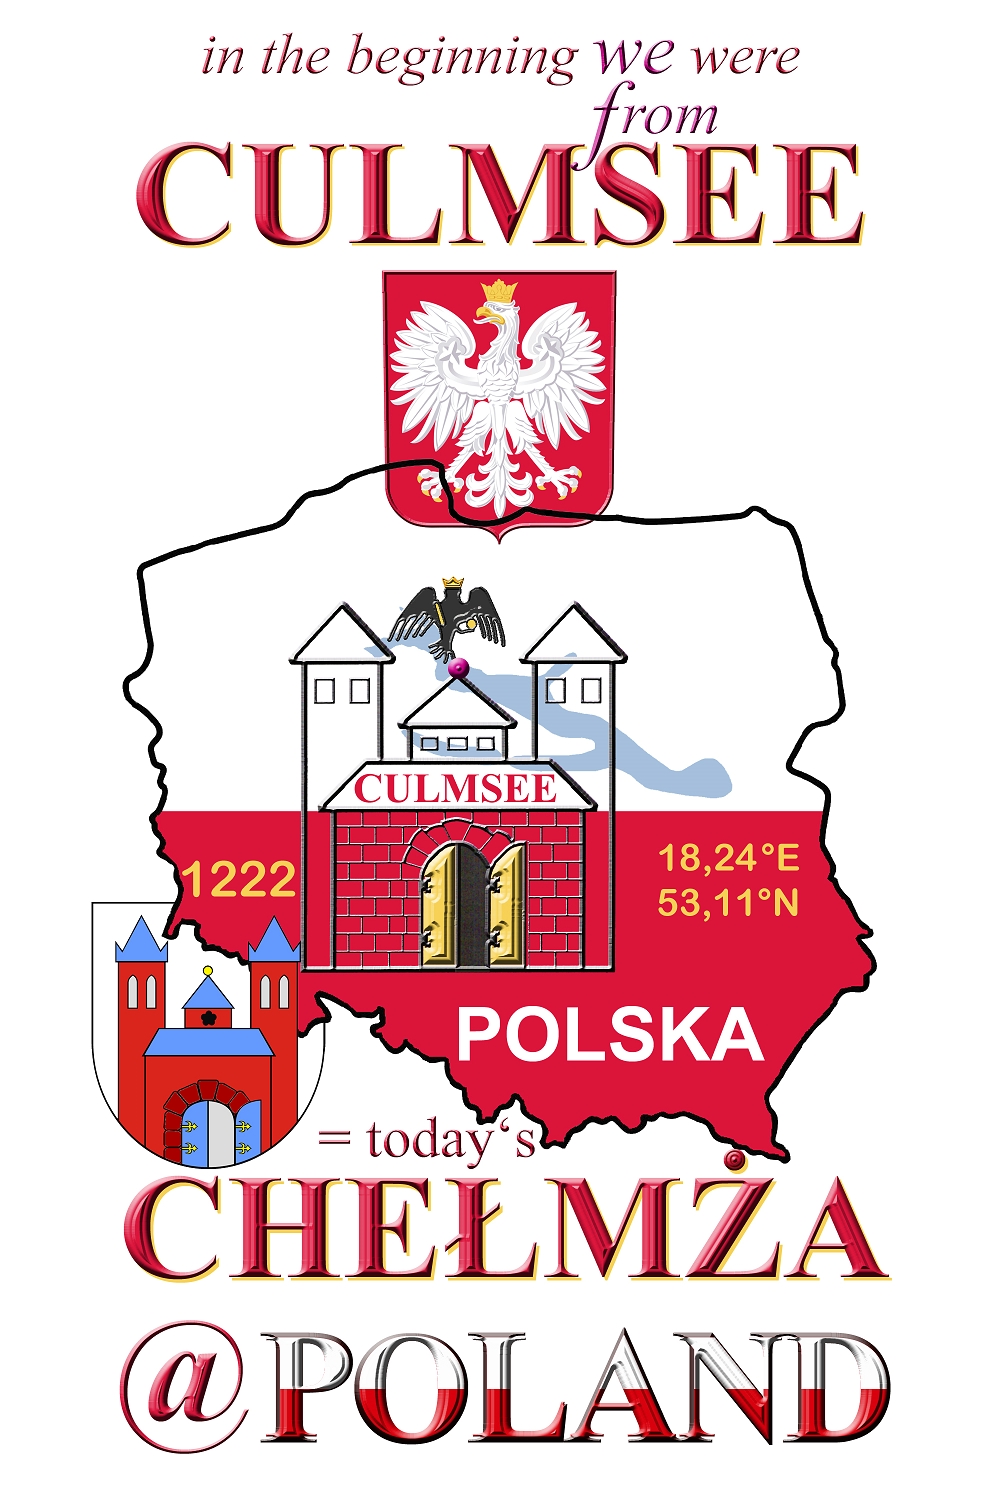 Chelmza at Poland